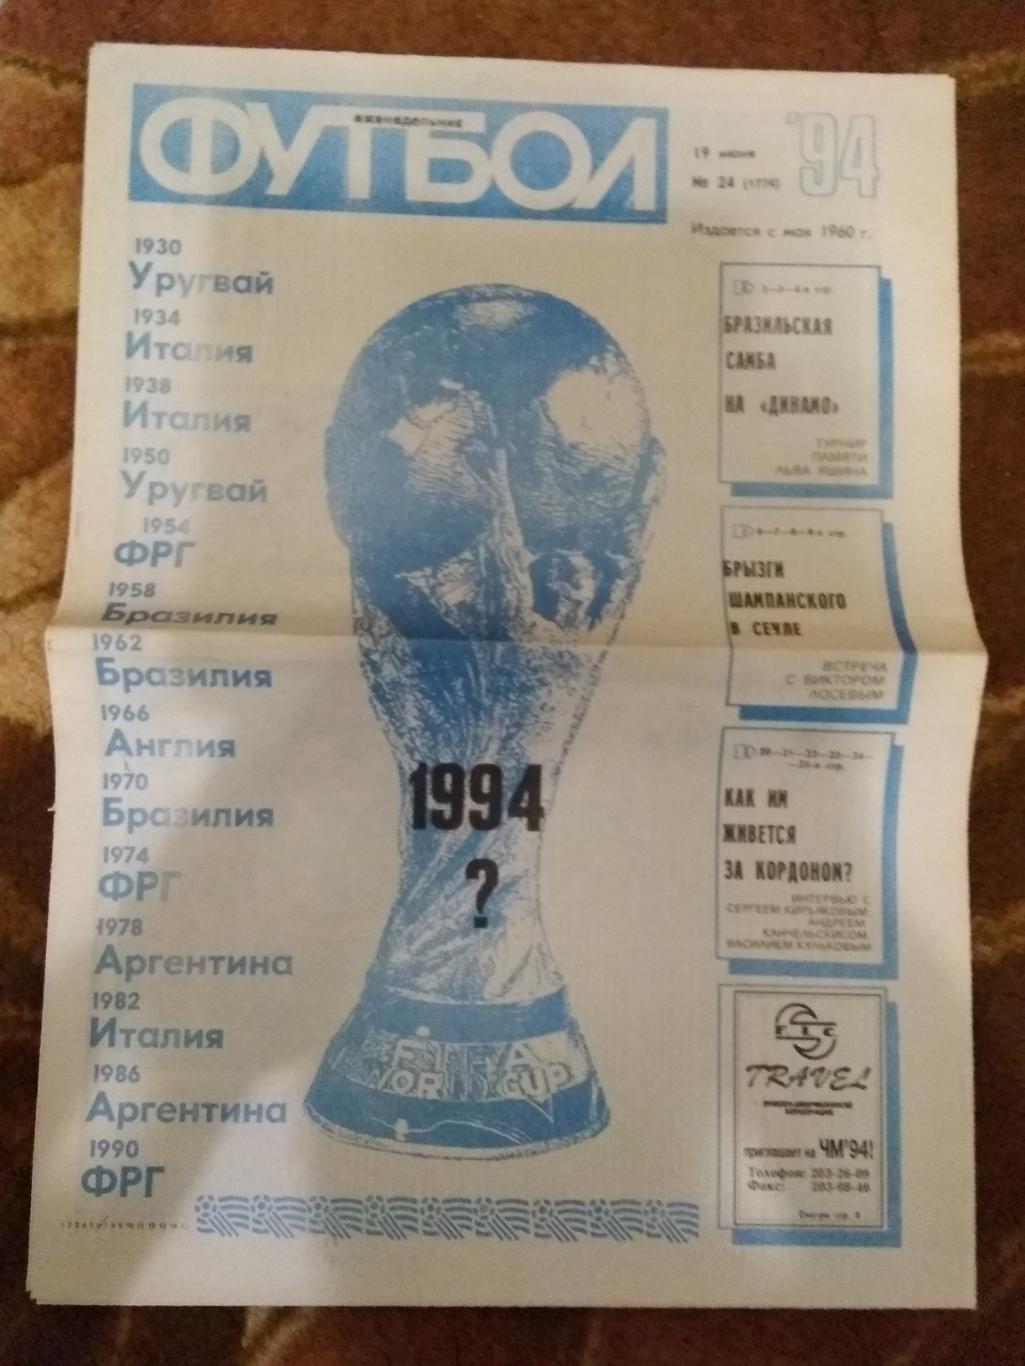 Футбол № 24 1994 г. (ЧМ США).